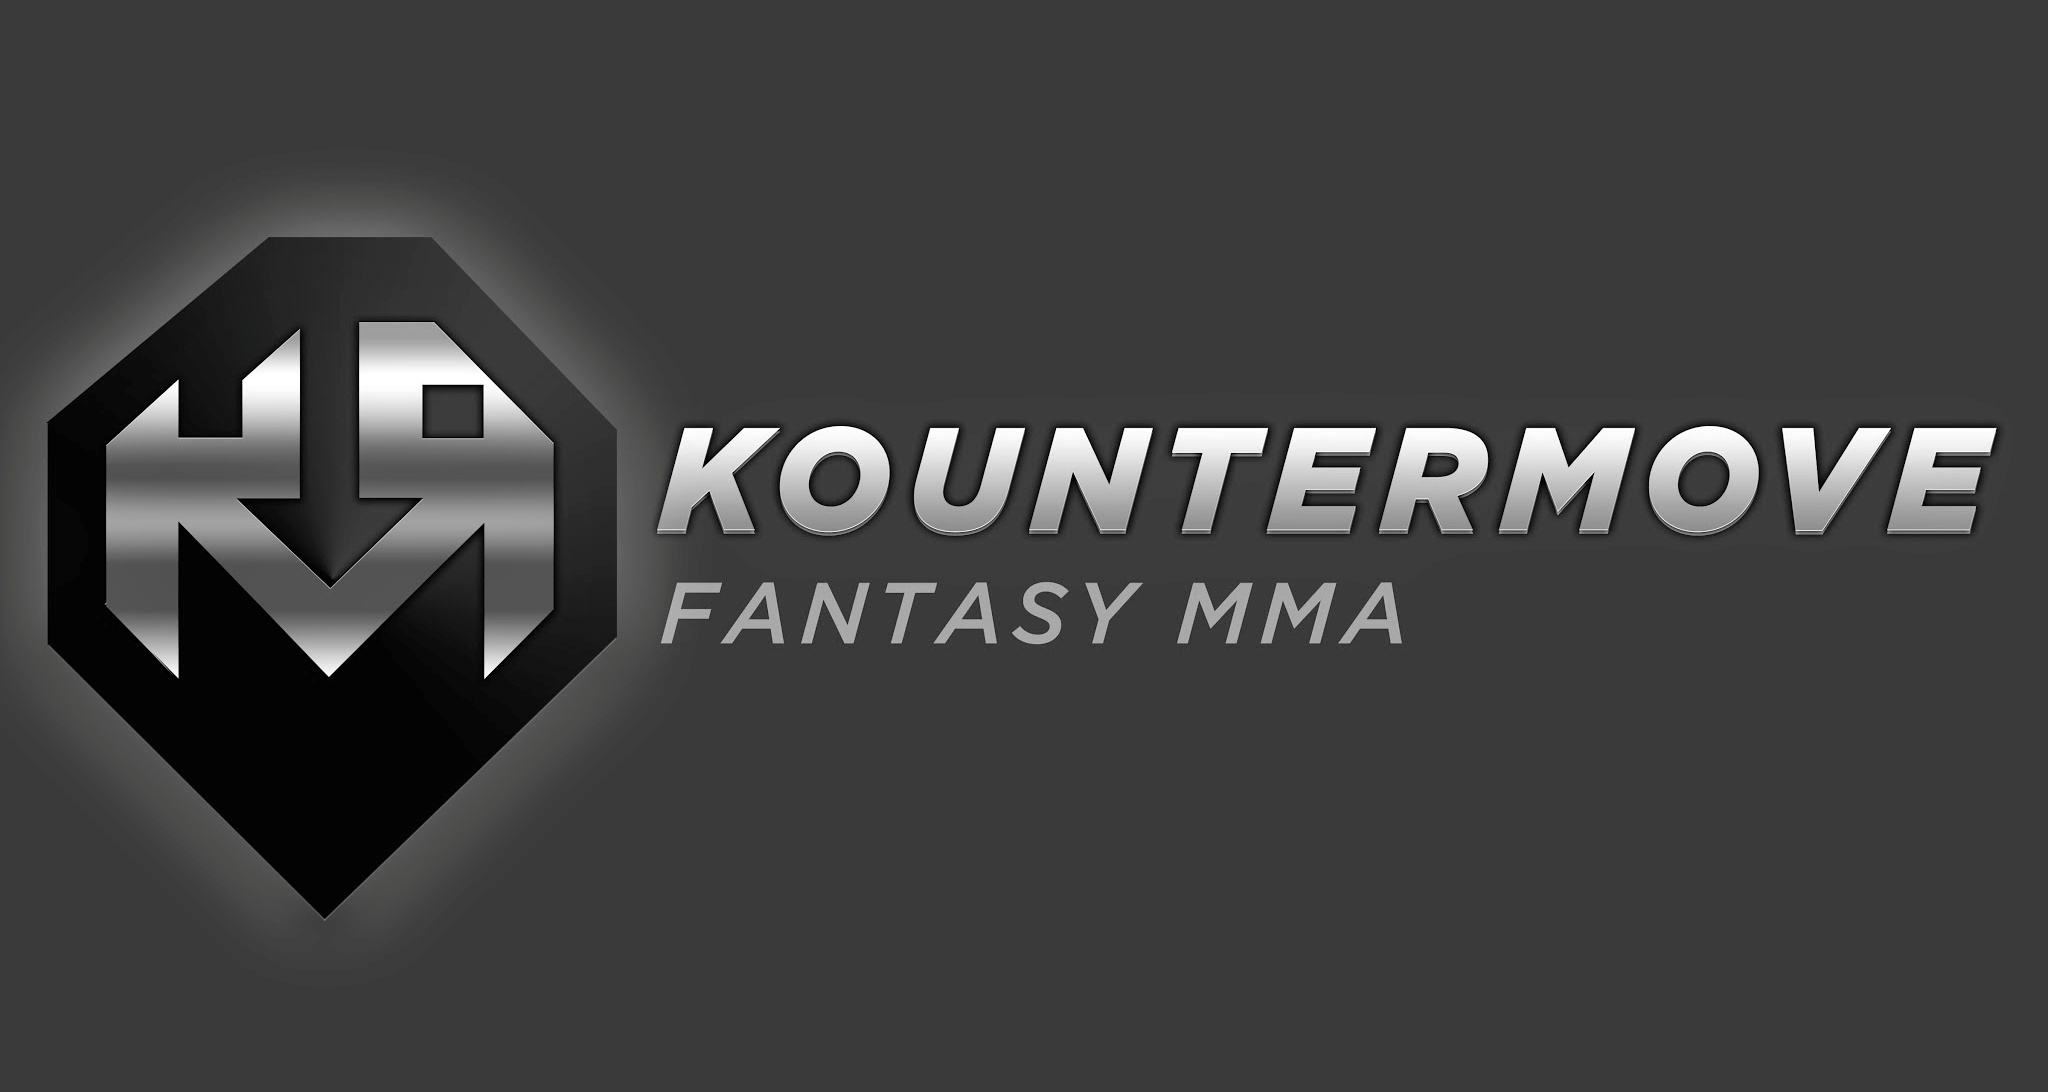 DraftKings Acquires MMA Fantasy Site Kountermove